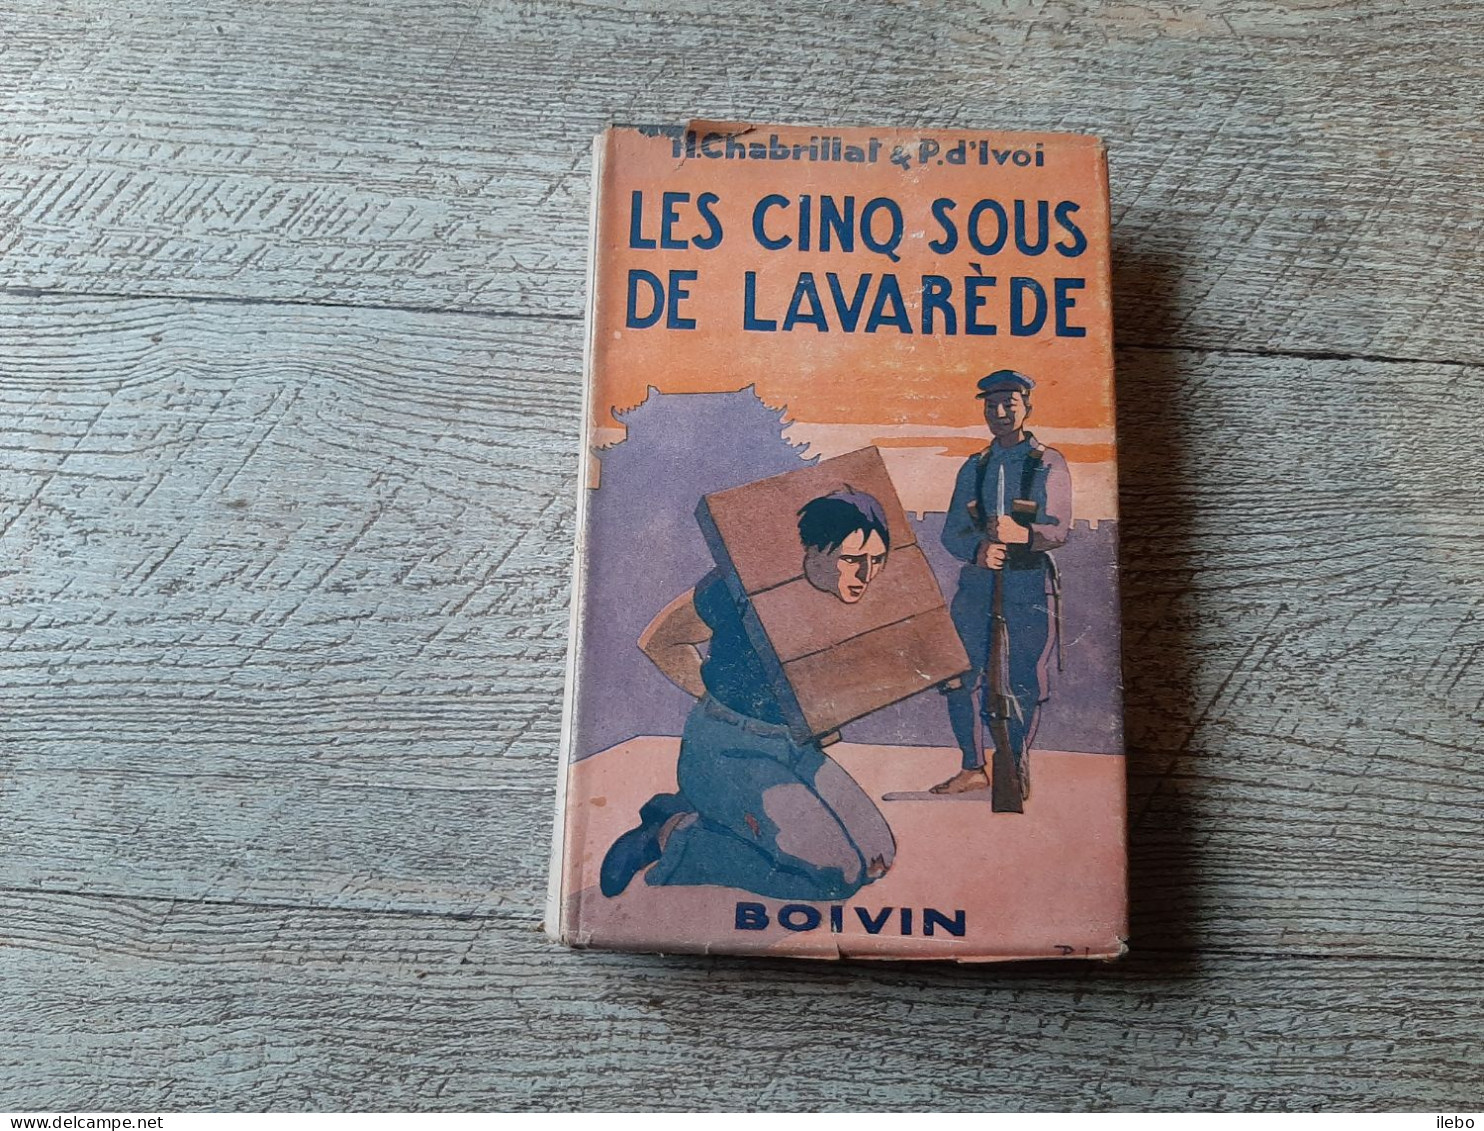 Les Cinq Sous De Lavarède Paul D'ivoi Et Chabrillat Boivin 1948 Dessins Dufour - Abenteuer